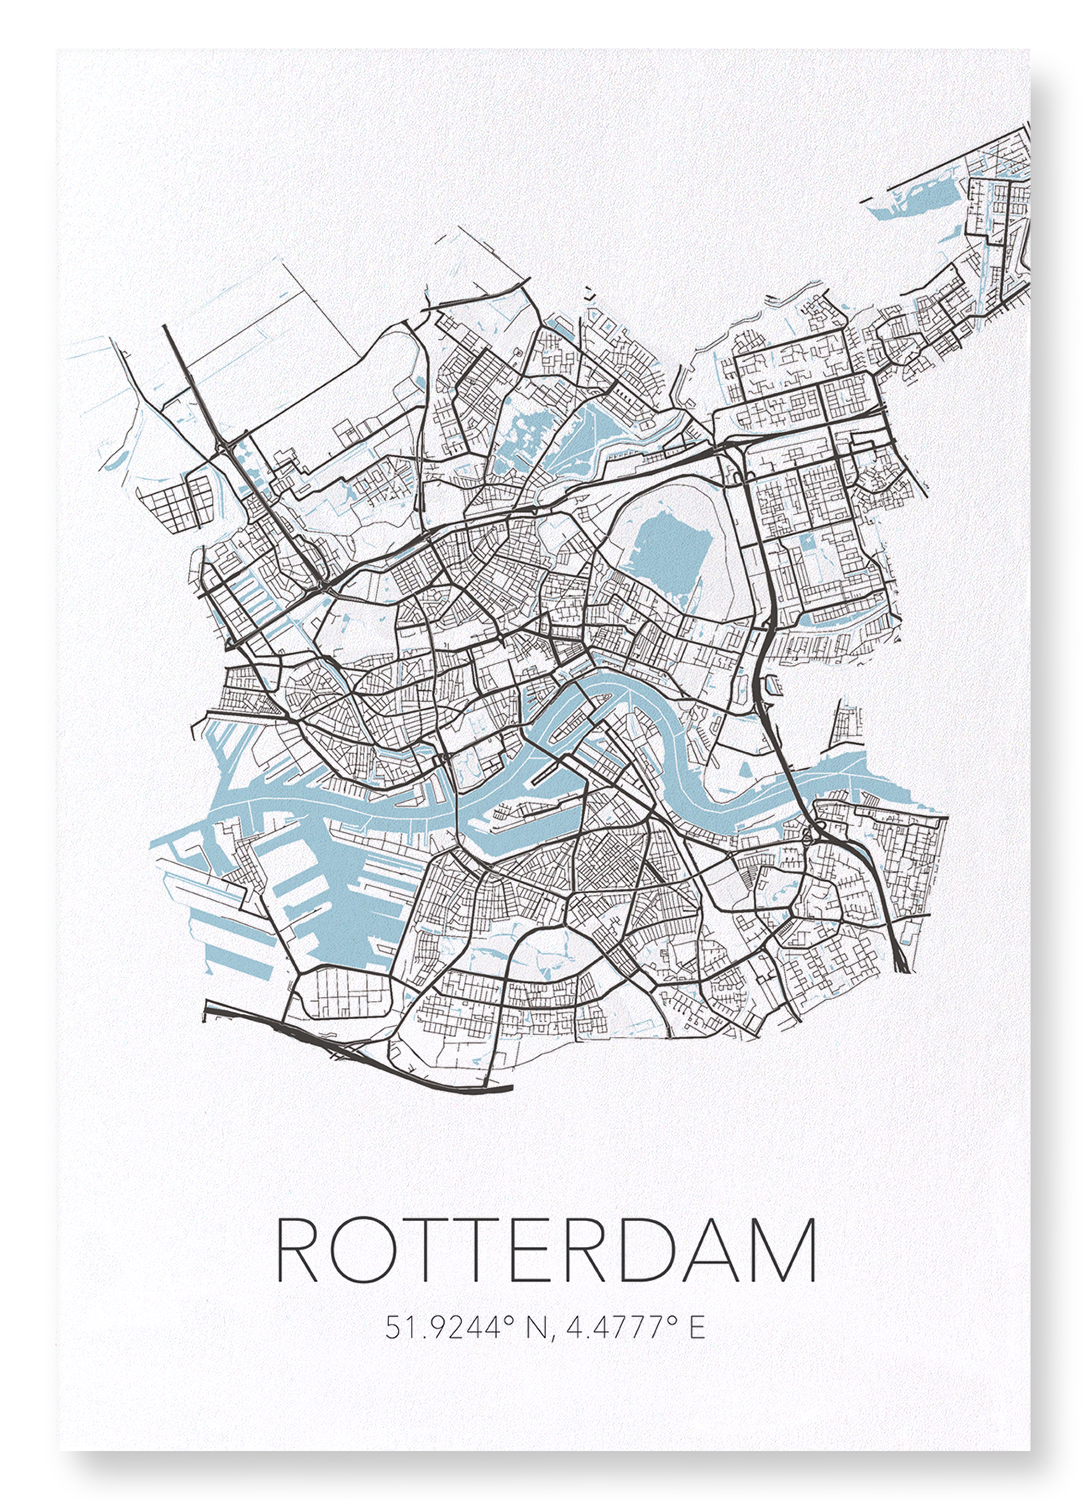 ROTTERDAM CUTOUT: Map Cutout Art Print